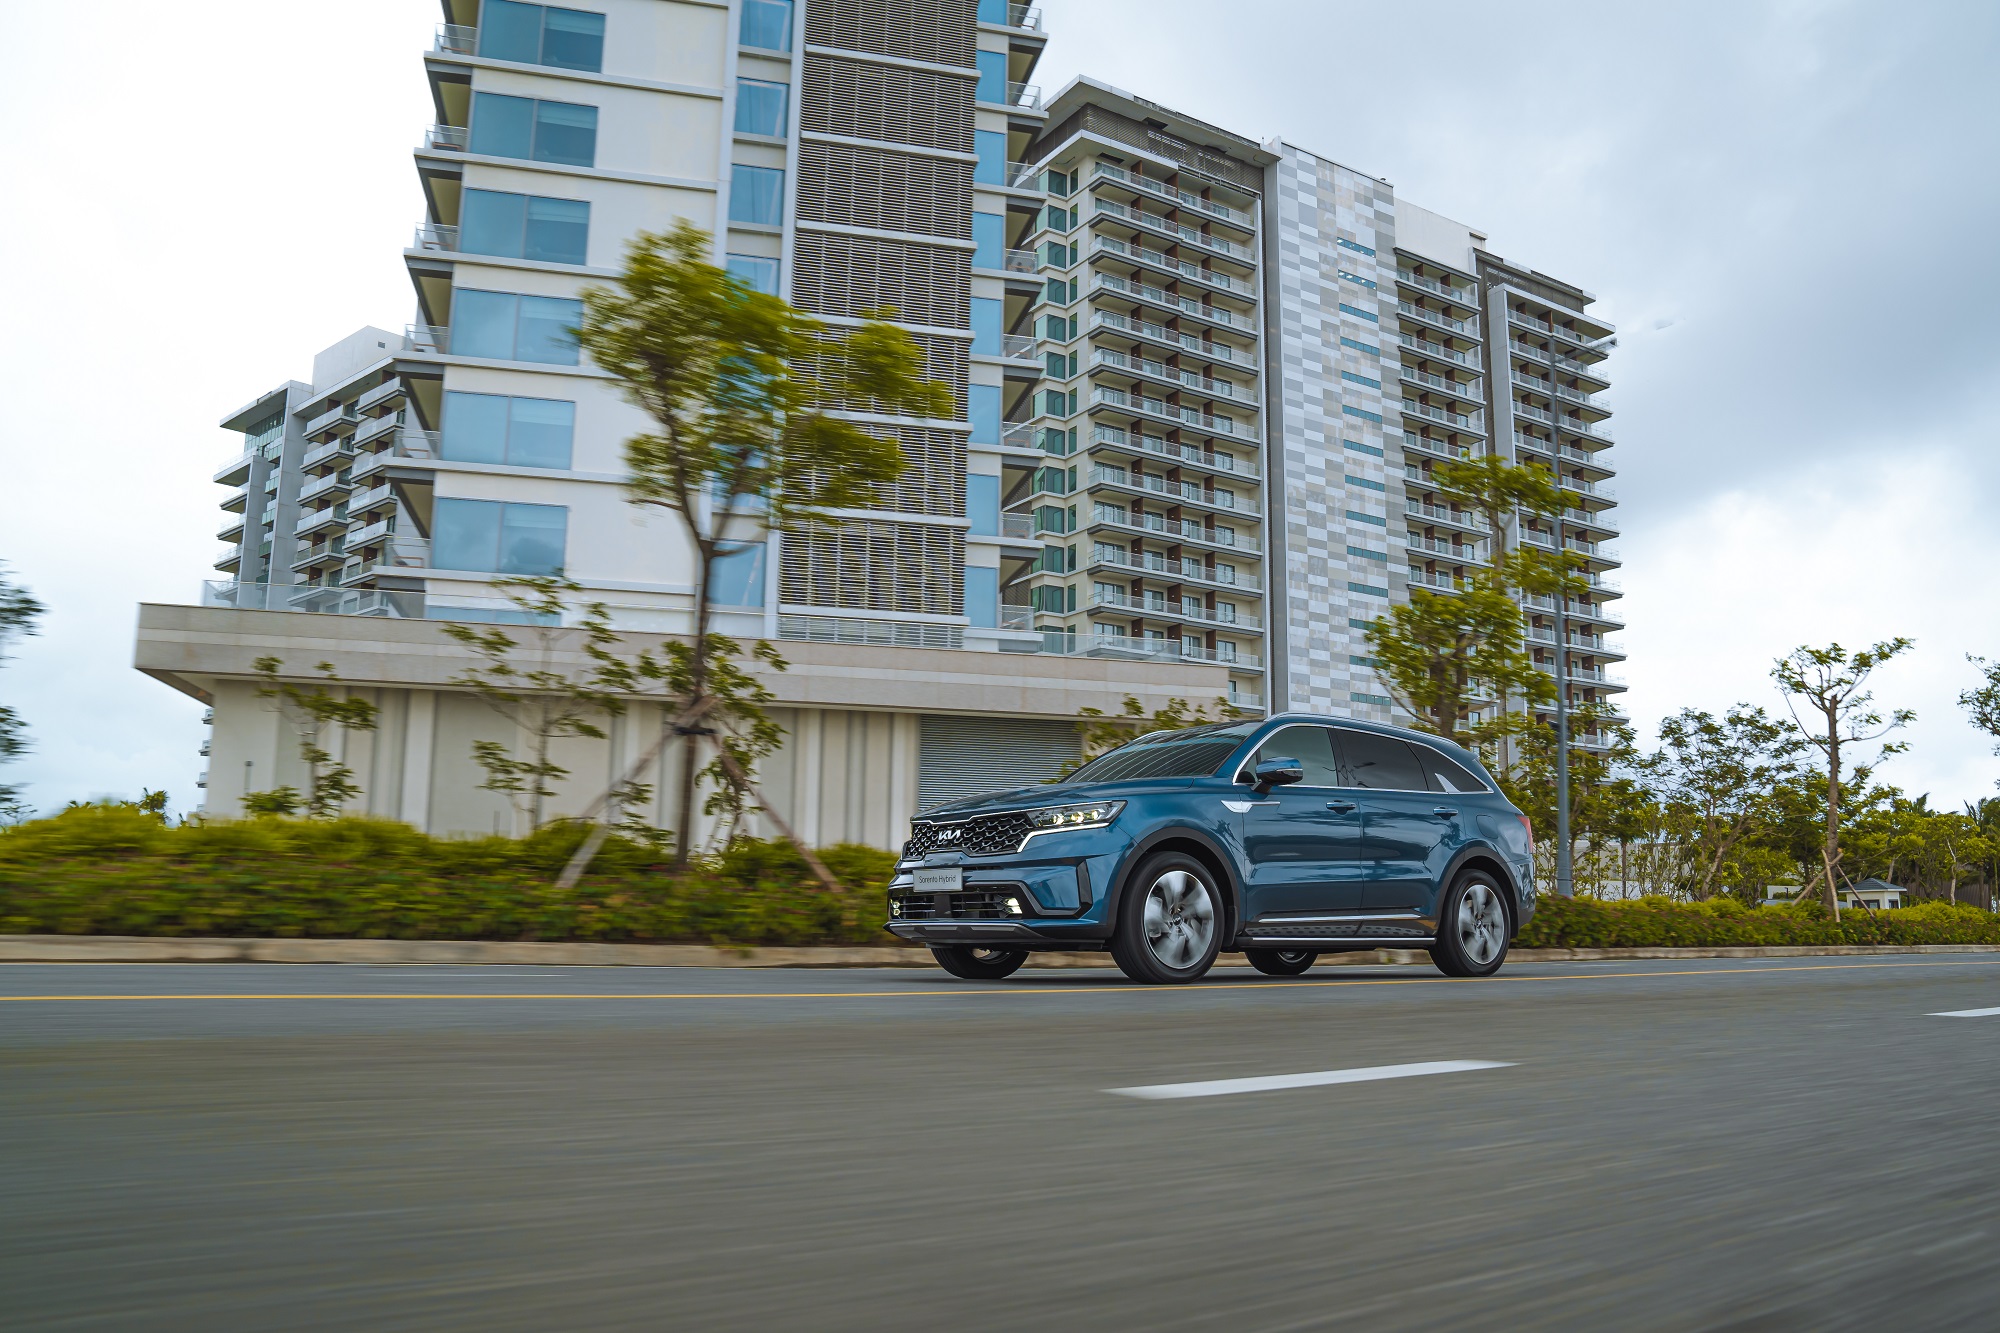 Kinh tế - THACO AUTO công bố giá bán mới và tăng ưu đãi cho các dòng xe Kia và Mazda (Hình 3).